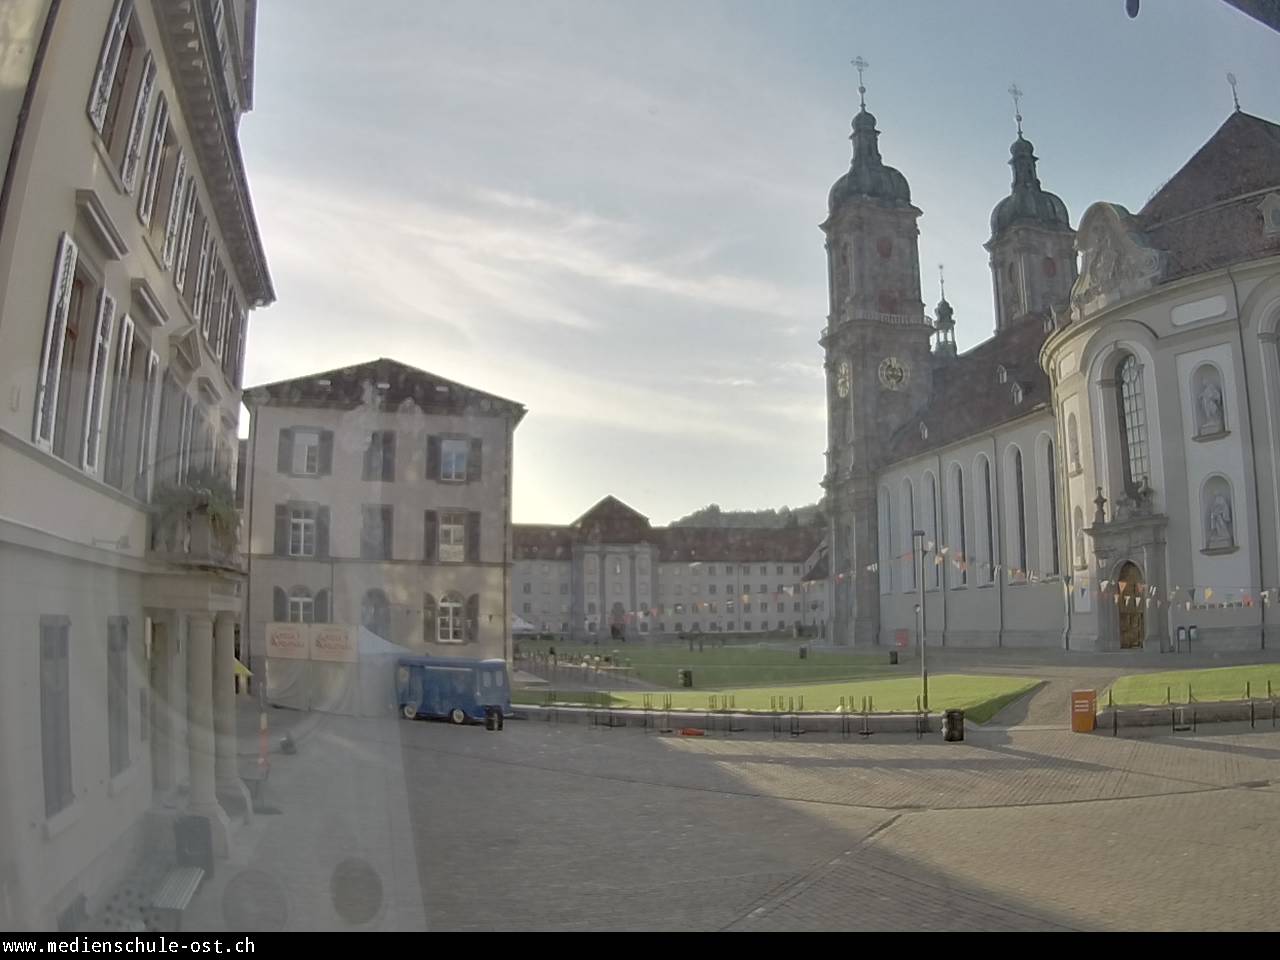 St. Gallen Je. 06:46